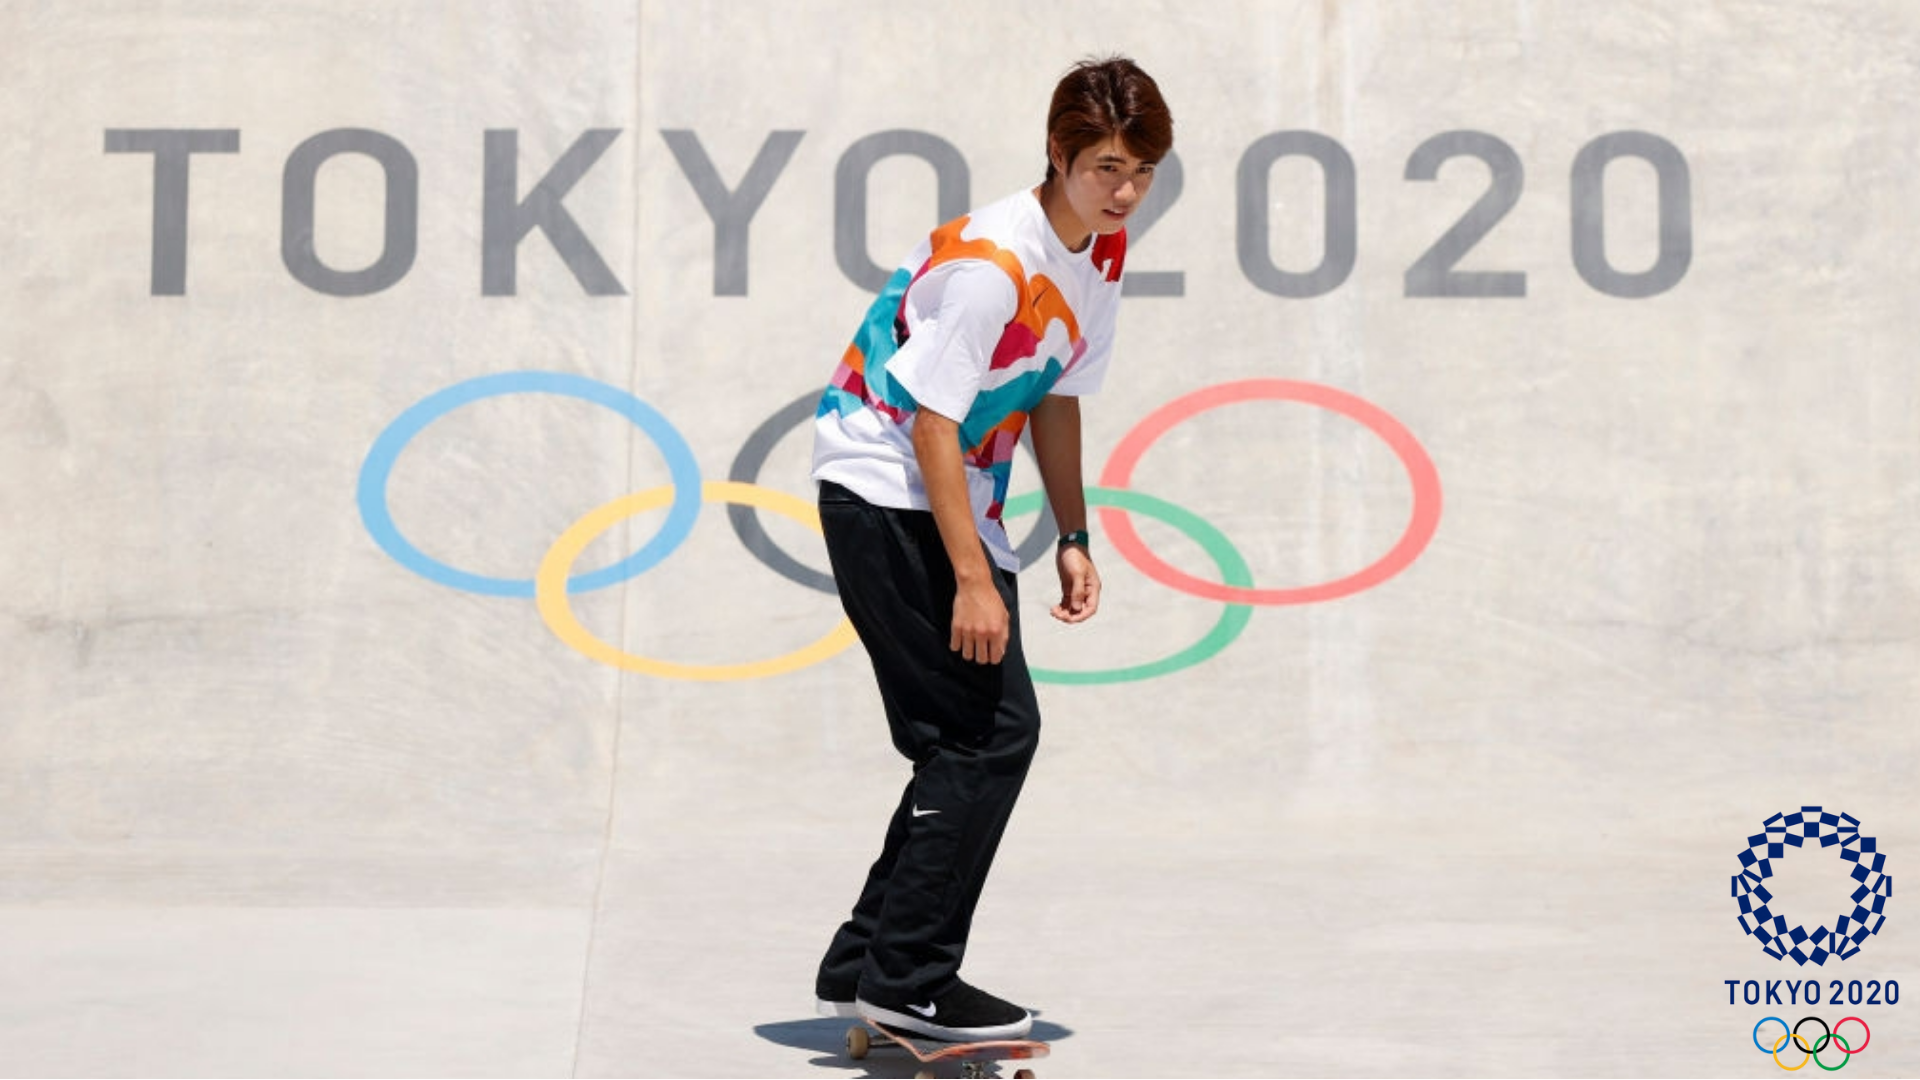 2020 Tokyo Olimpiyatları Türkiye Raporu için kaykay branşı ile ilgili bir görsel.